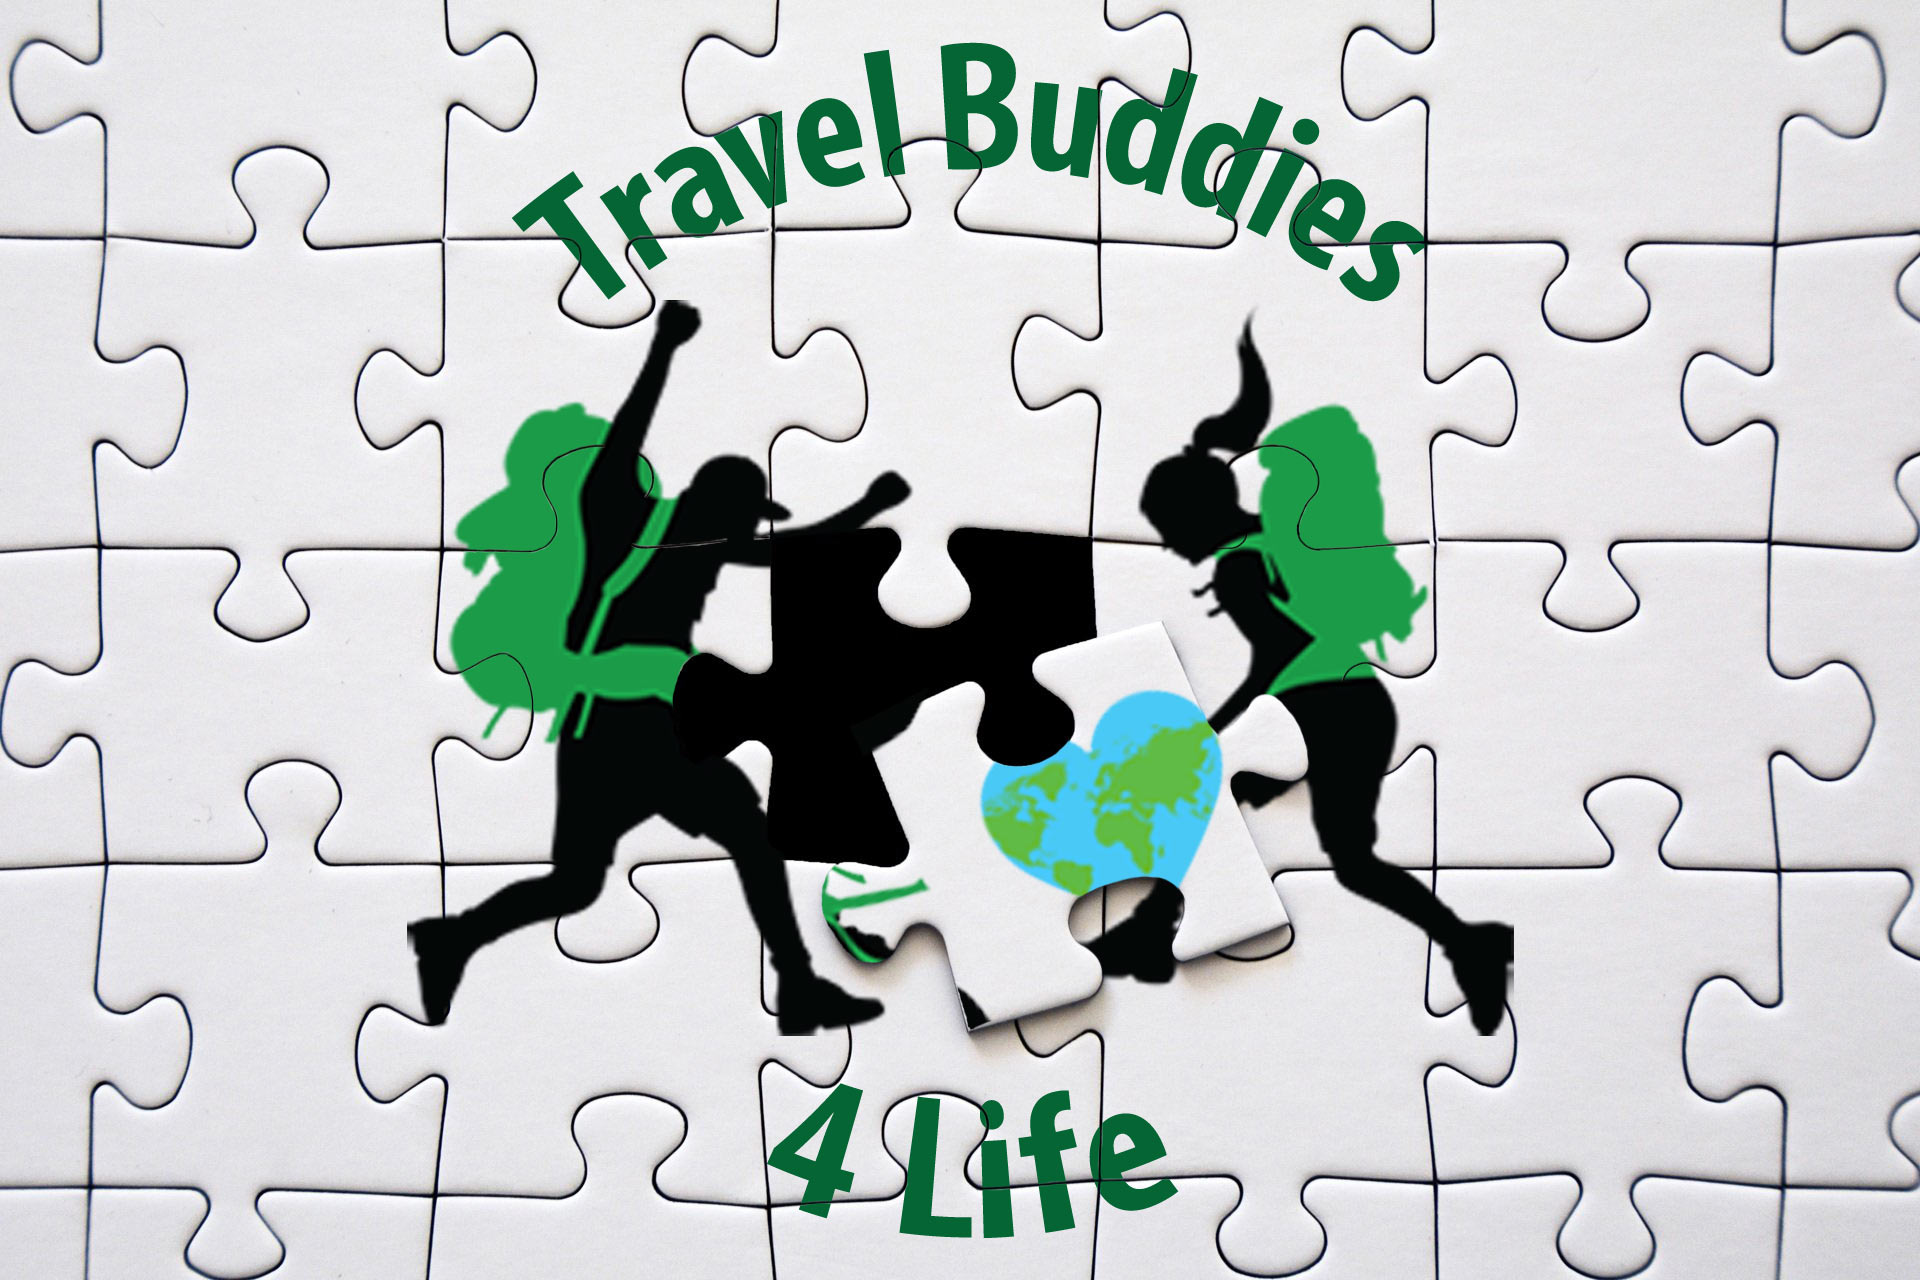 Travel Buddies 4 Life Puzzle Partnership